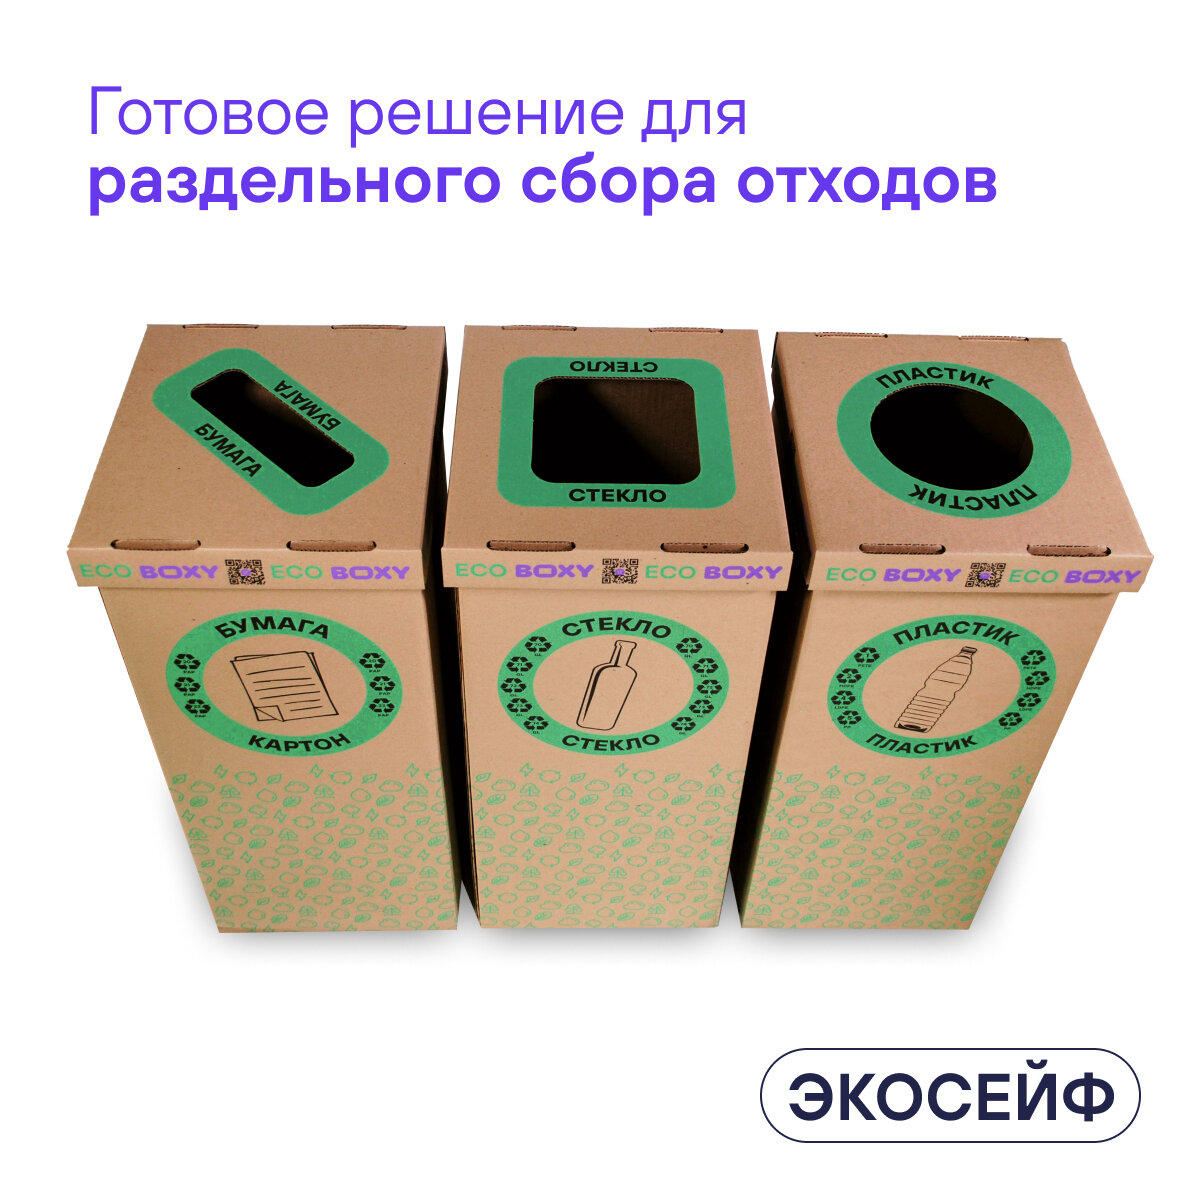 Набор контейнеров для раздельного сбора мусора BOXY экосейф, 58 л, В упаковке 3 шт: бумага, пластик, стекло.